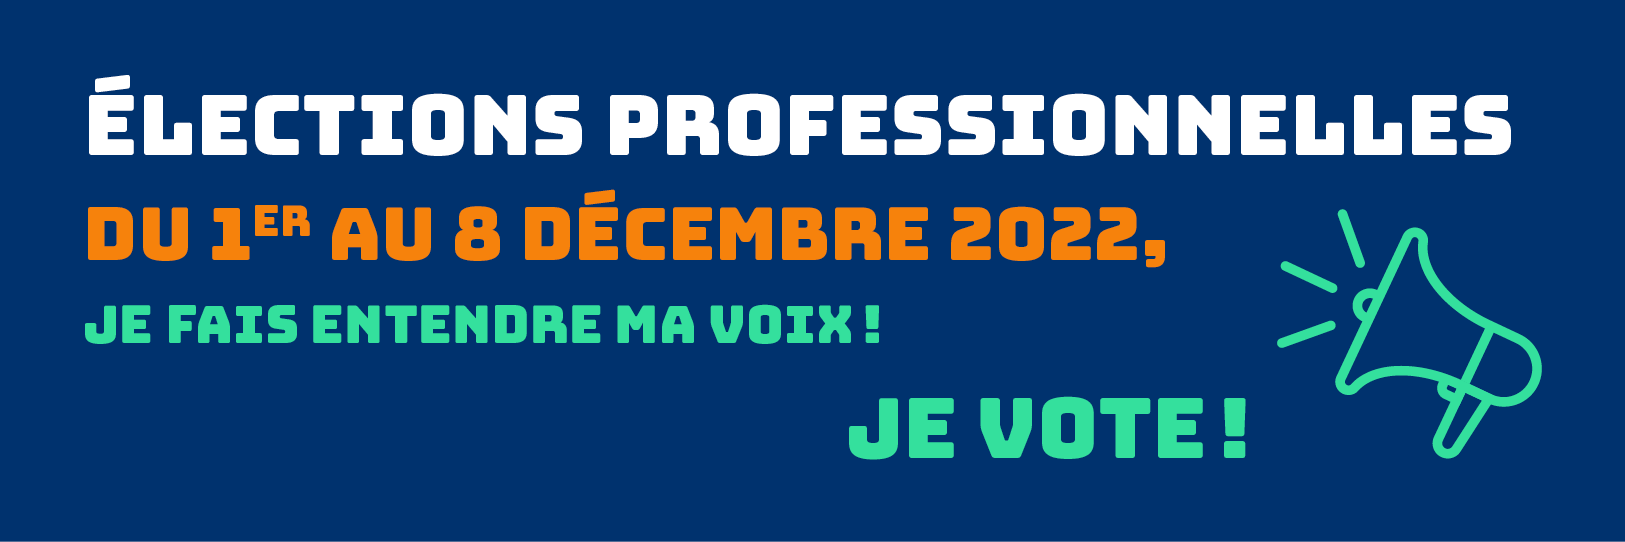 Elections professionnelles du 1er décembre au 8 décembre 2022